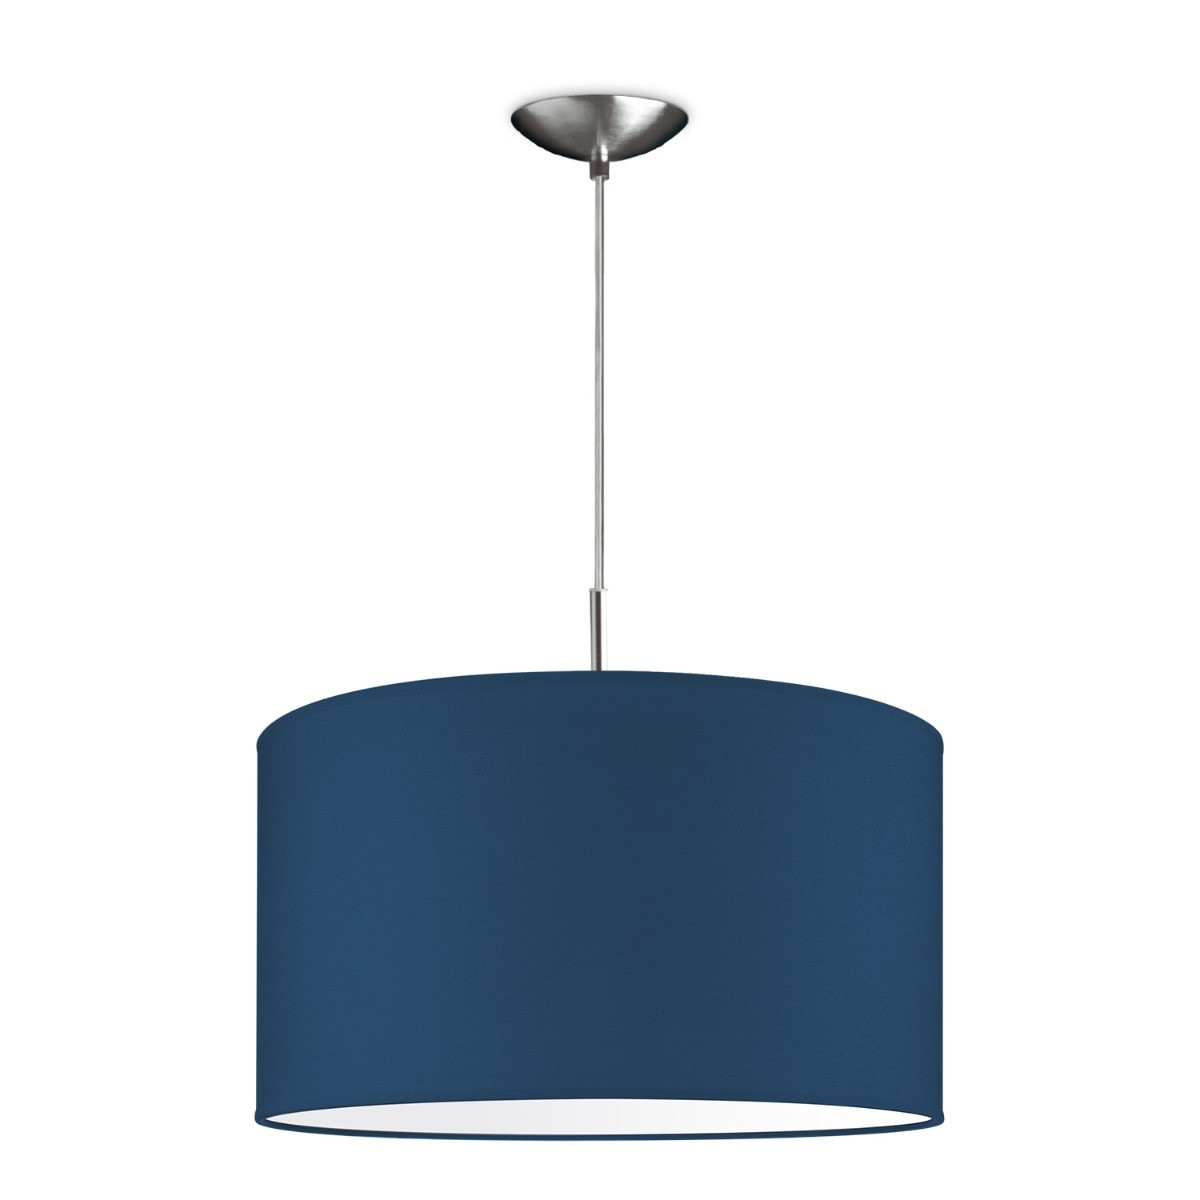 Light depot - hanglamp tube deluxe bling Ø 40 cm - blauw - Outlet